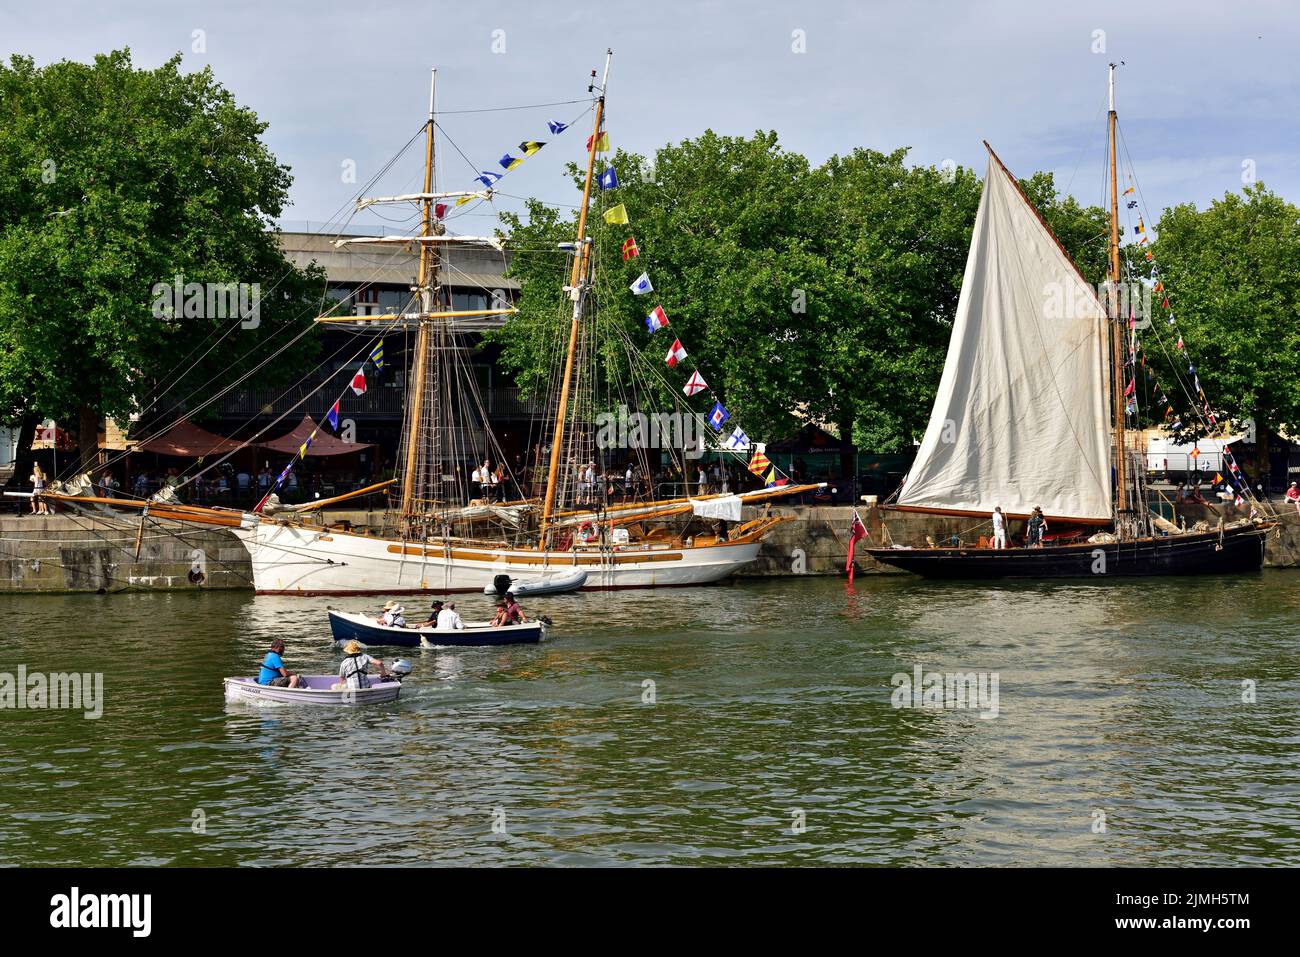 Bristol schwimmende Hafen an heißen sonnigen Tag mit zwei kleinen Booten und zwei großen Segelschiffen am Kai während des Festivals, Großbritannien Stockfoto